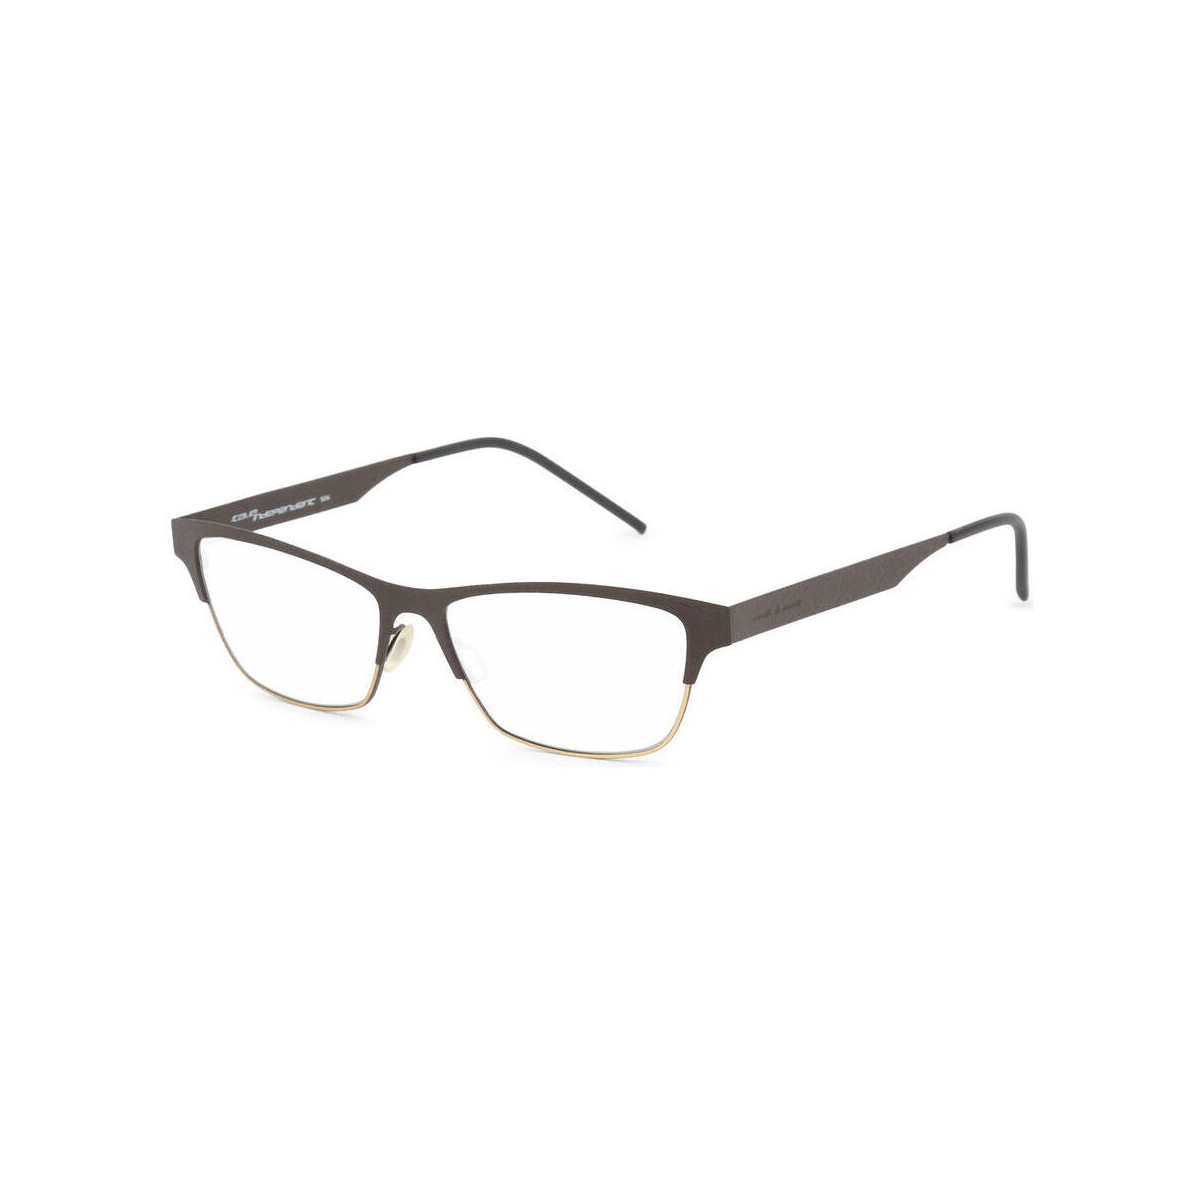 Ρολόγια & Kοσμήματα Γυναίκα óculos de sol Italia Independent - 5300A Black